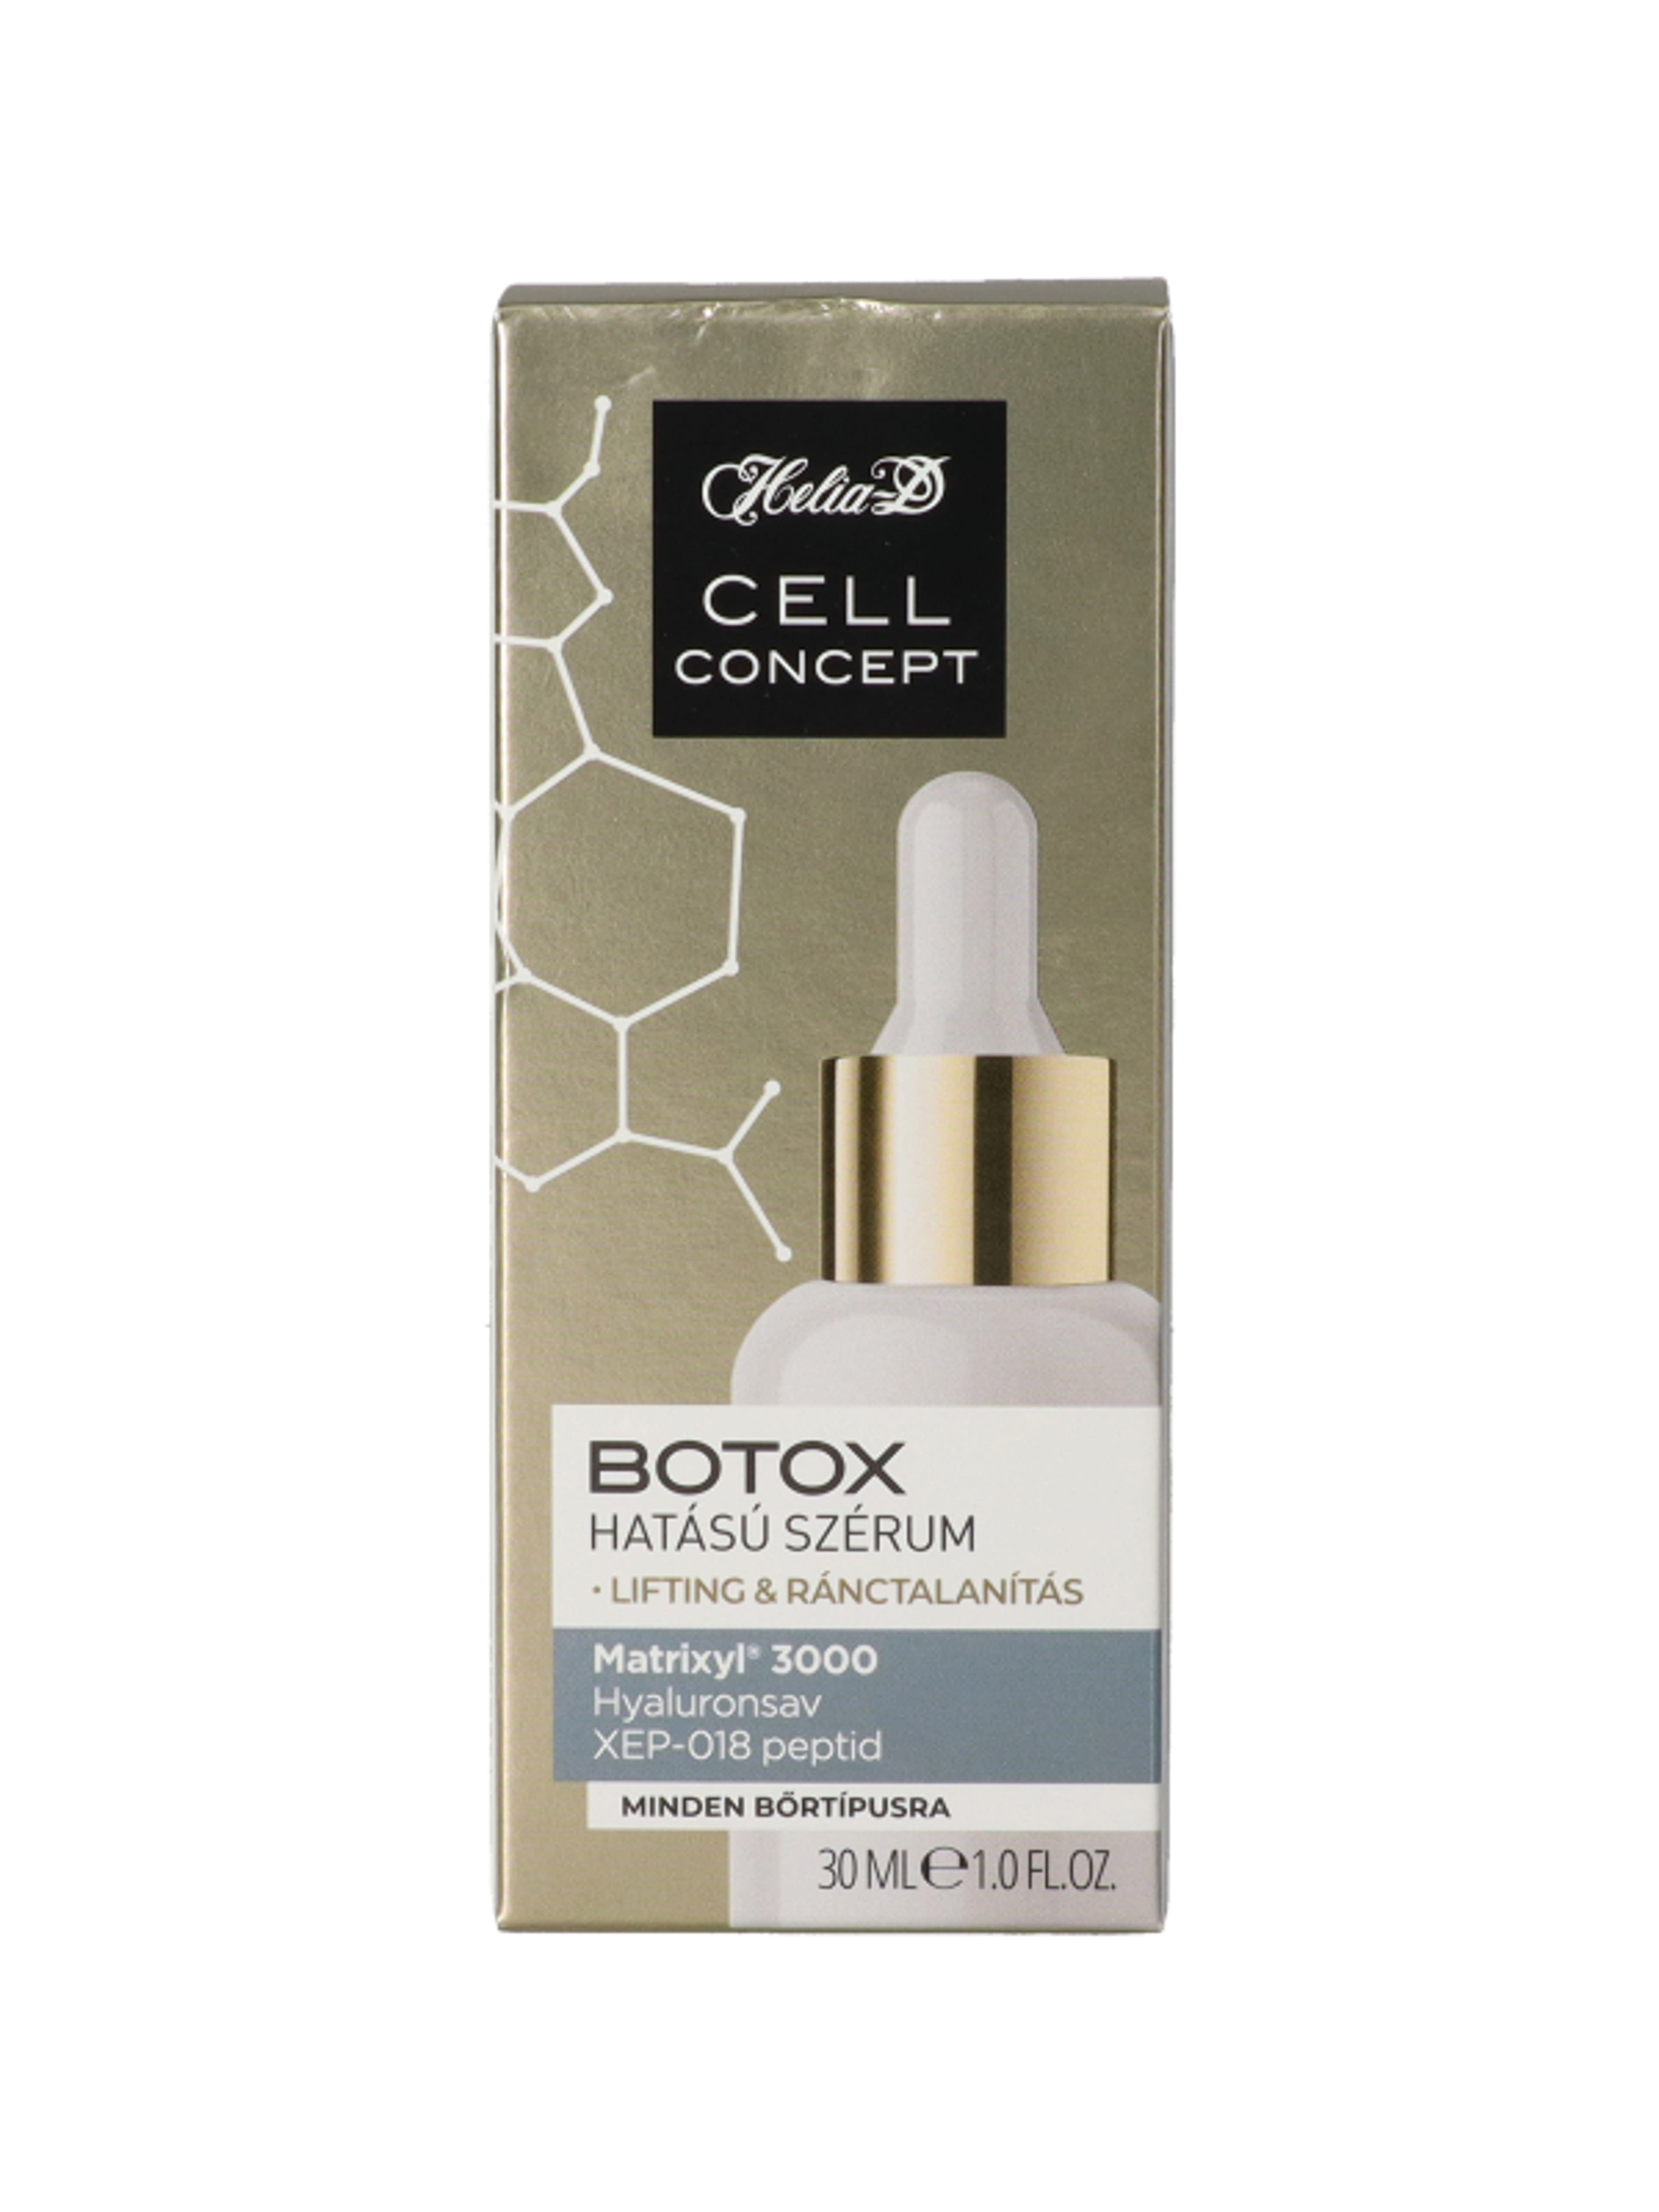 Helia-D Cell Concept Botox hatású szérum - 30 ml